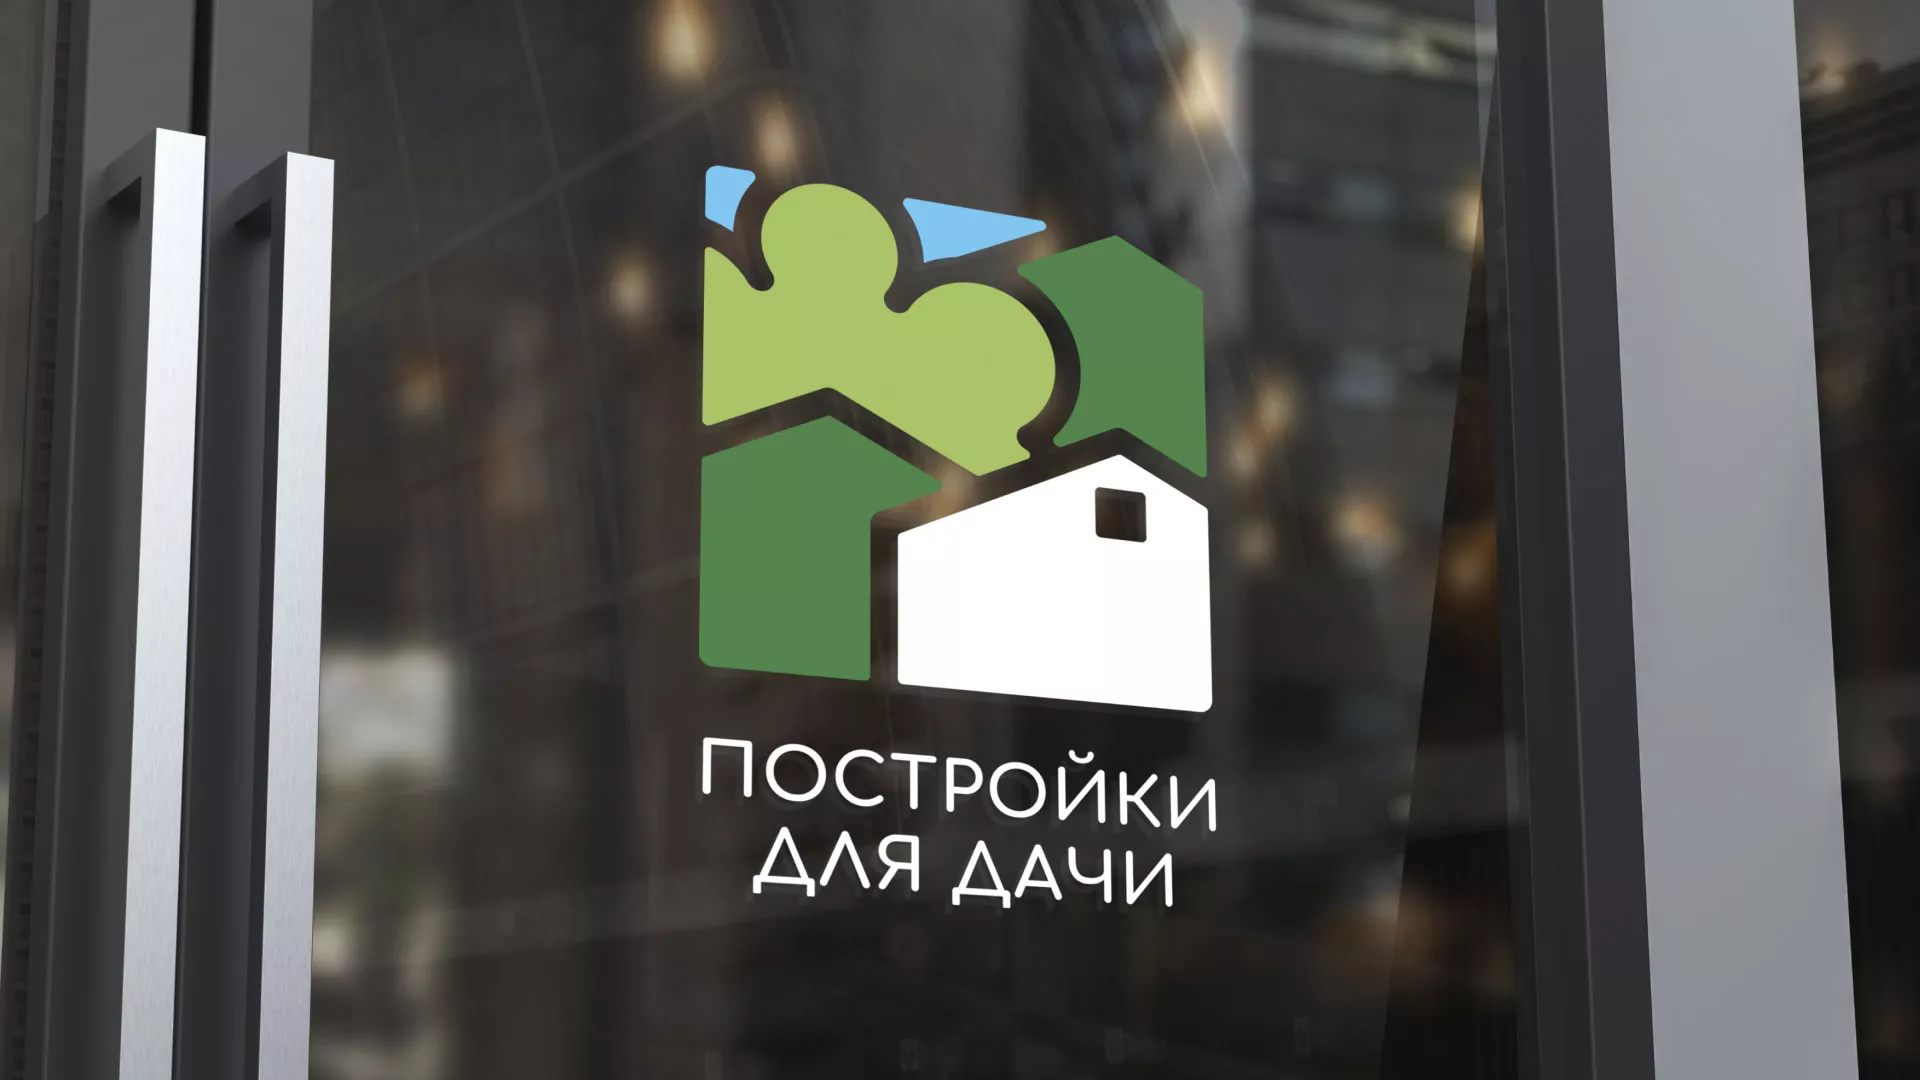 Разработка логотипа в Щучье для компании «Постройки для дачи»